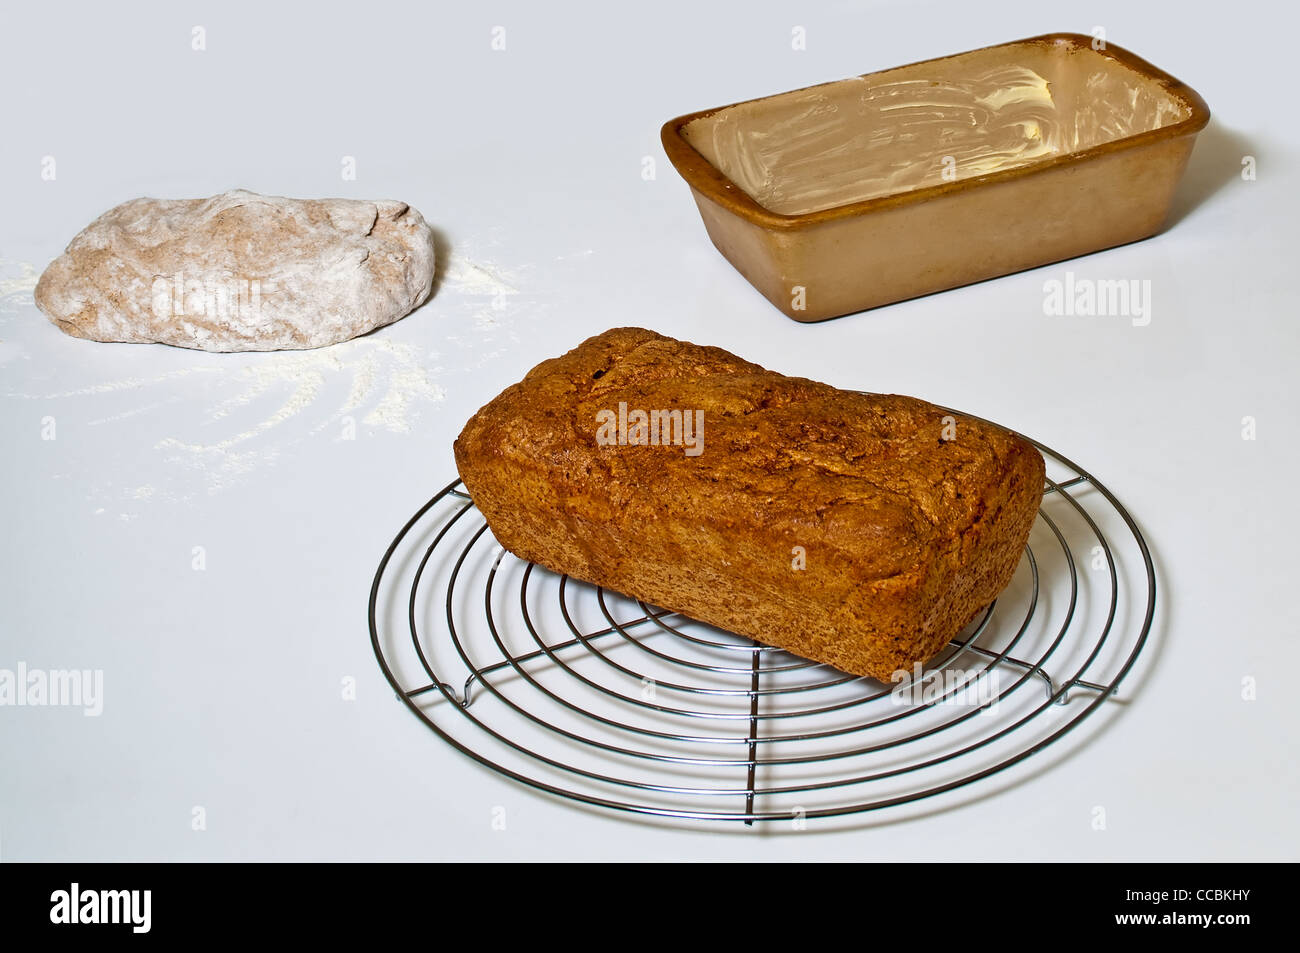 whole grain bread Stock Photo